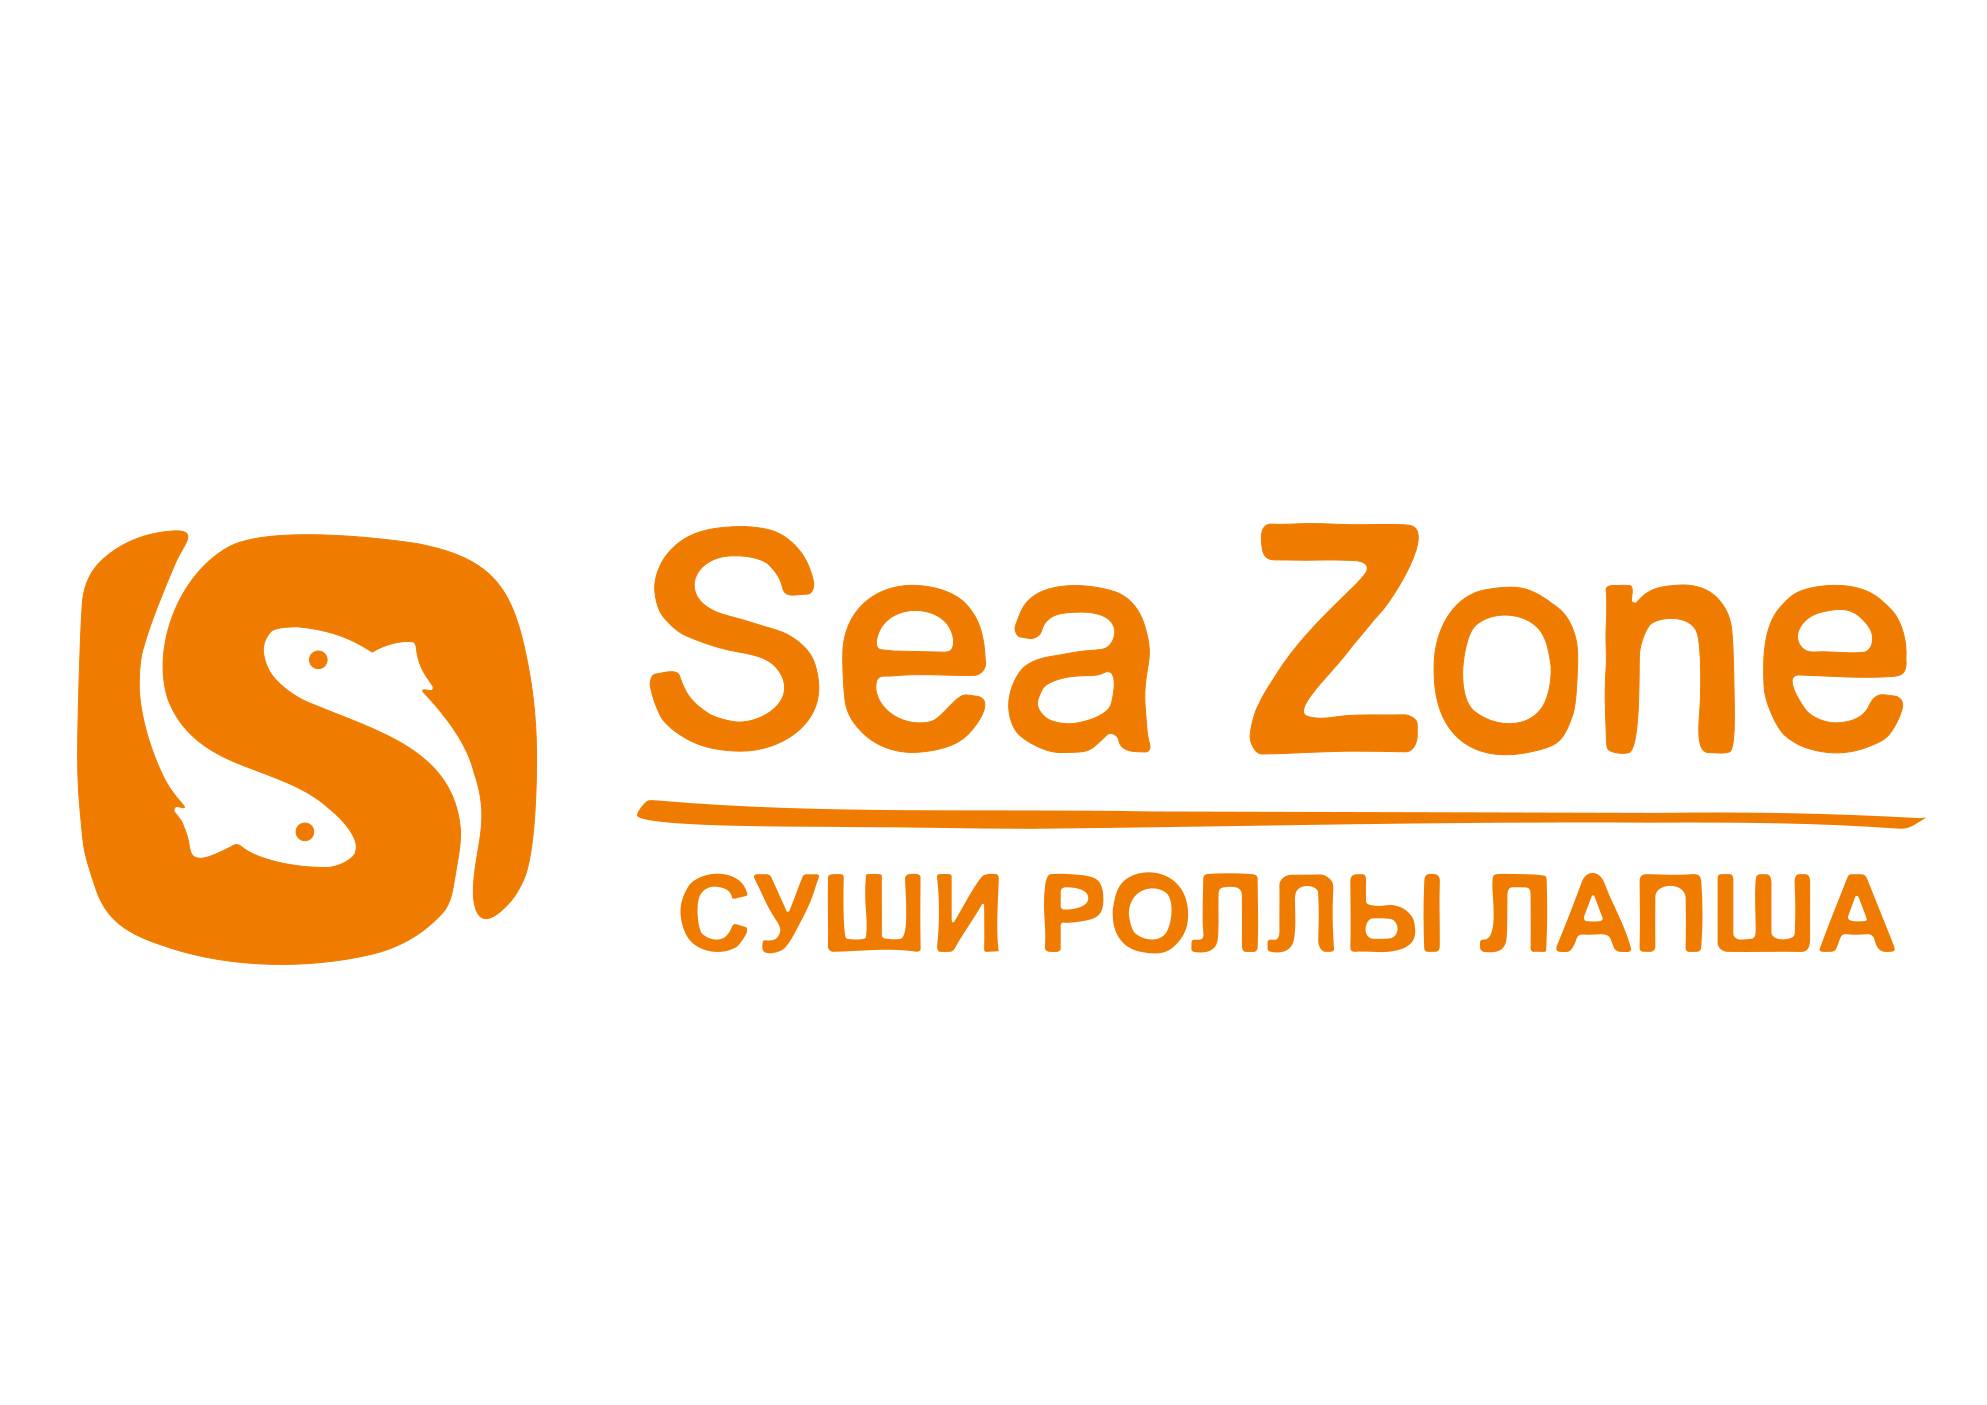 Sea Zone